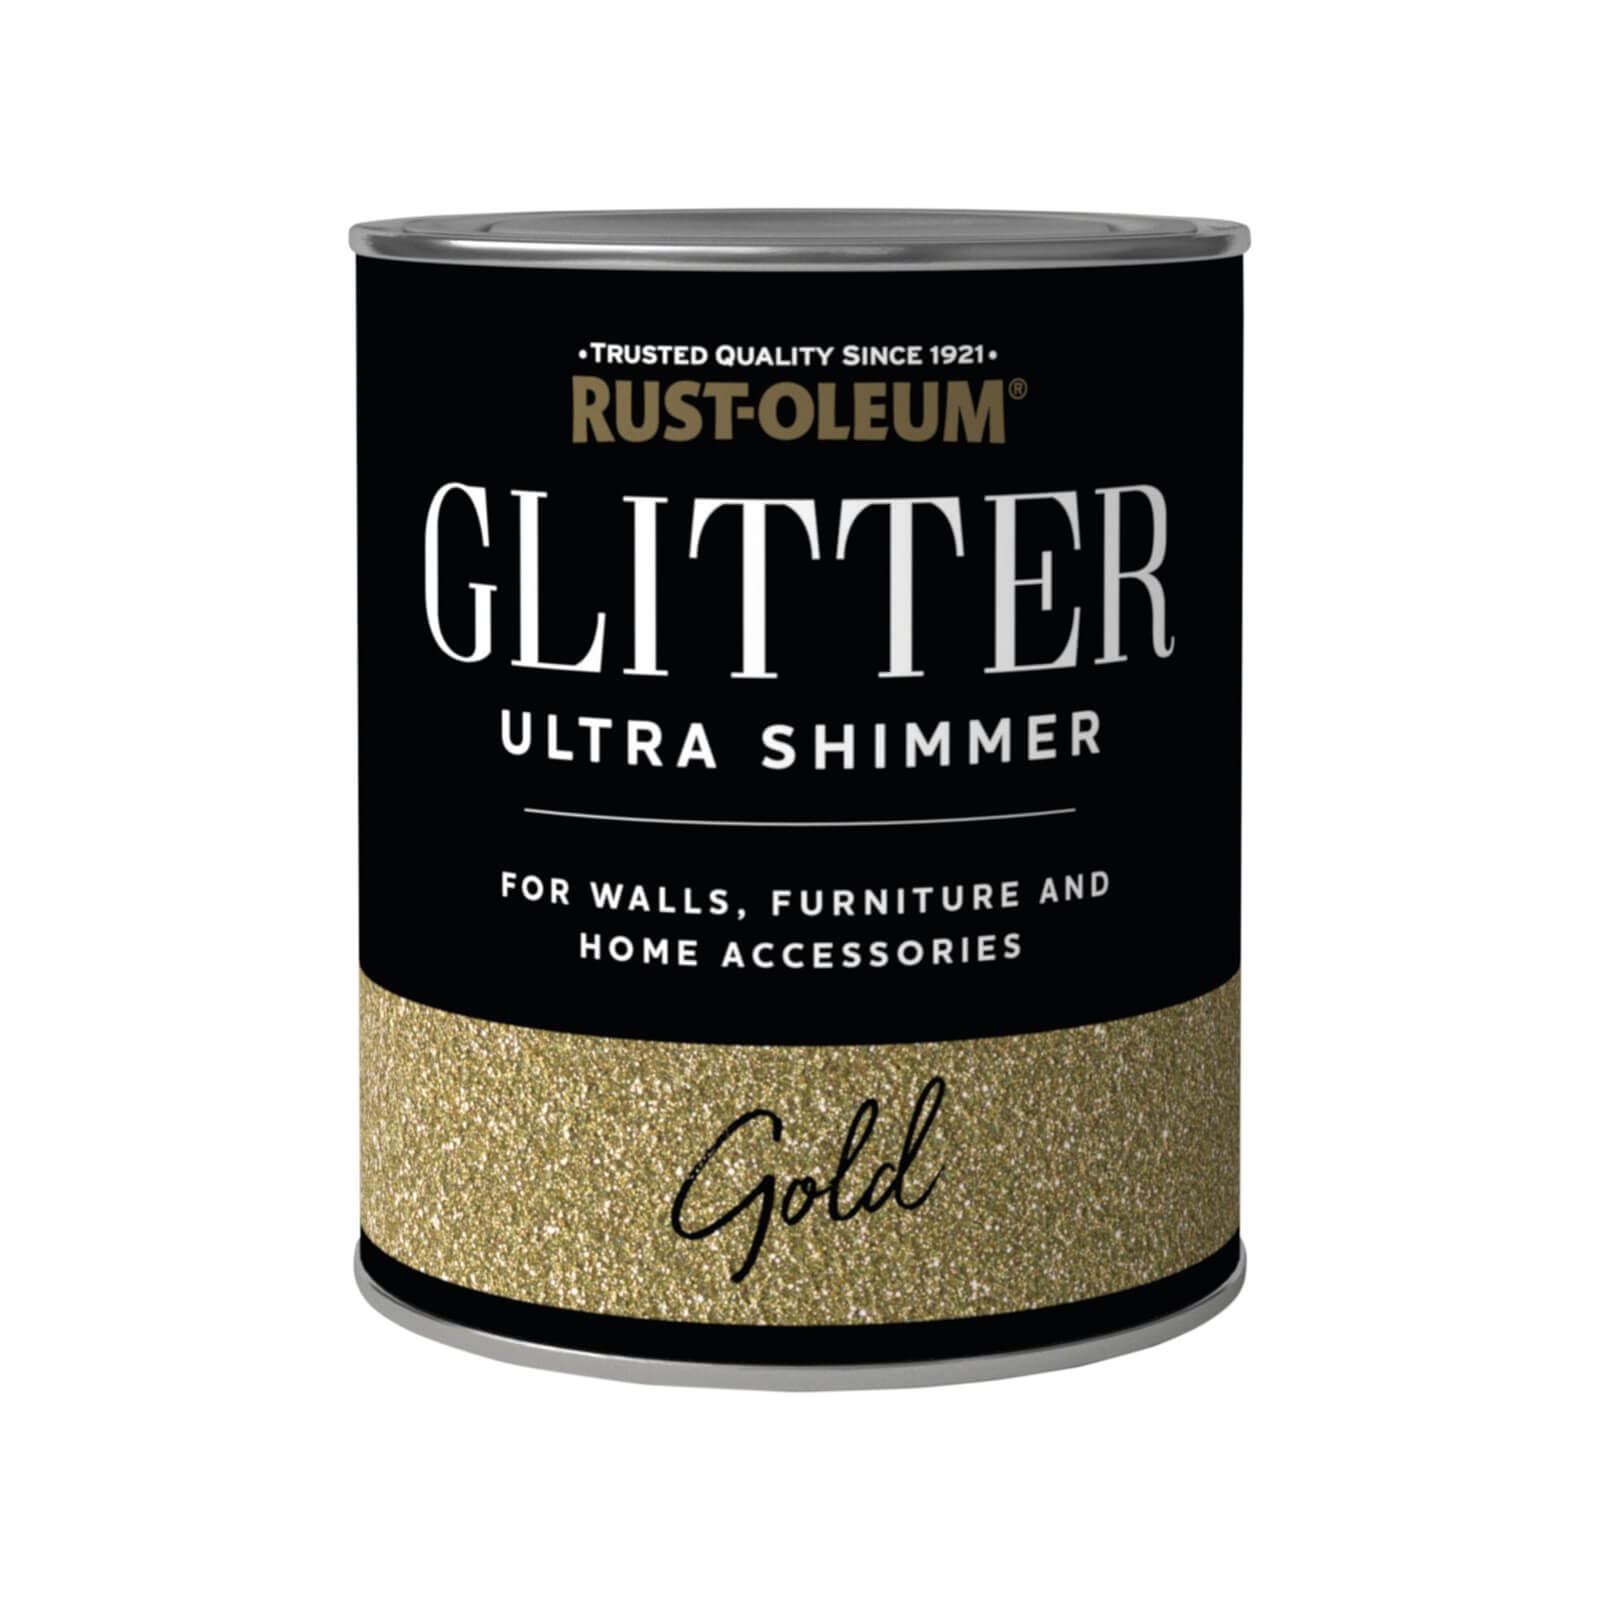 Photo of Rust-oleum Ultra Shimmer Gold Glitter - 750ml